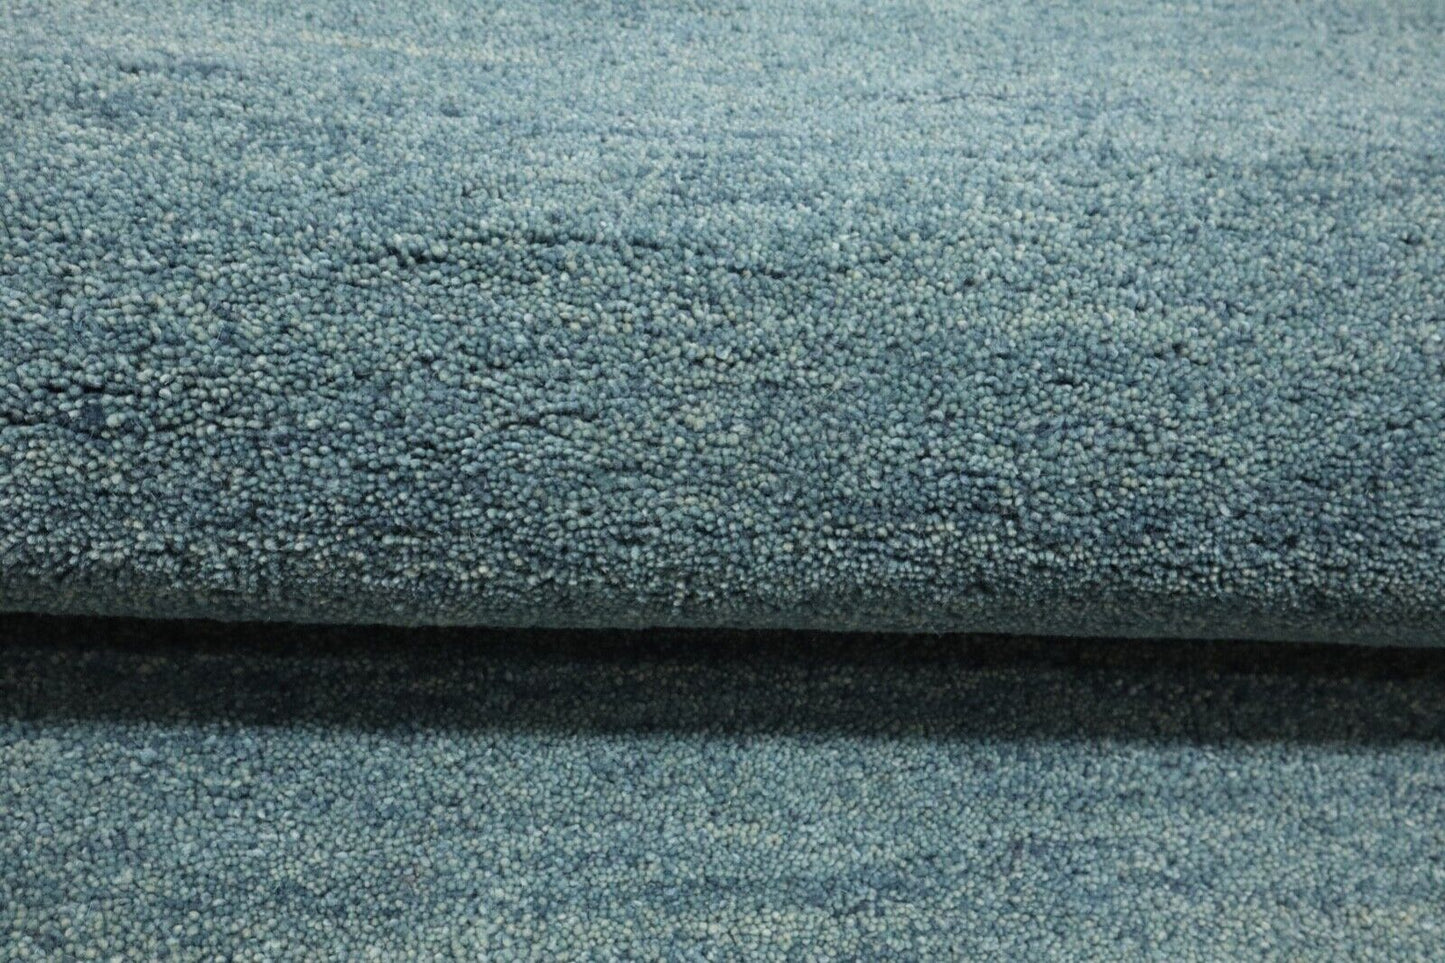 Uni Grau Teppich 100% Wolle 120X180 cm Handarbeit Handgetuftet T951